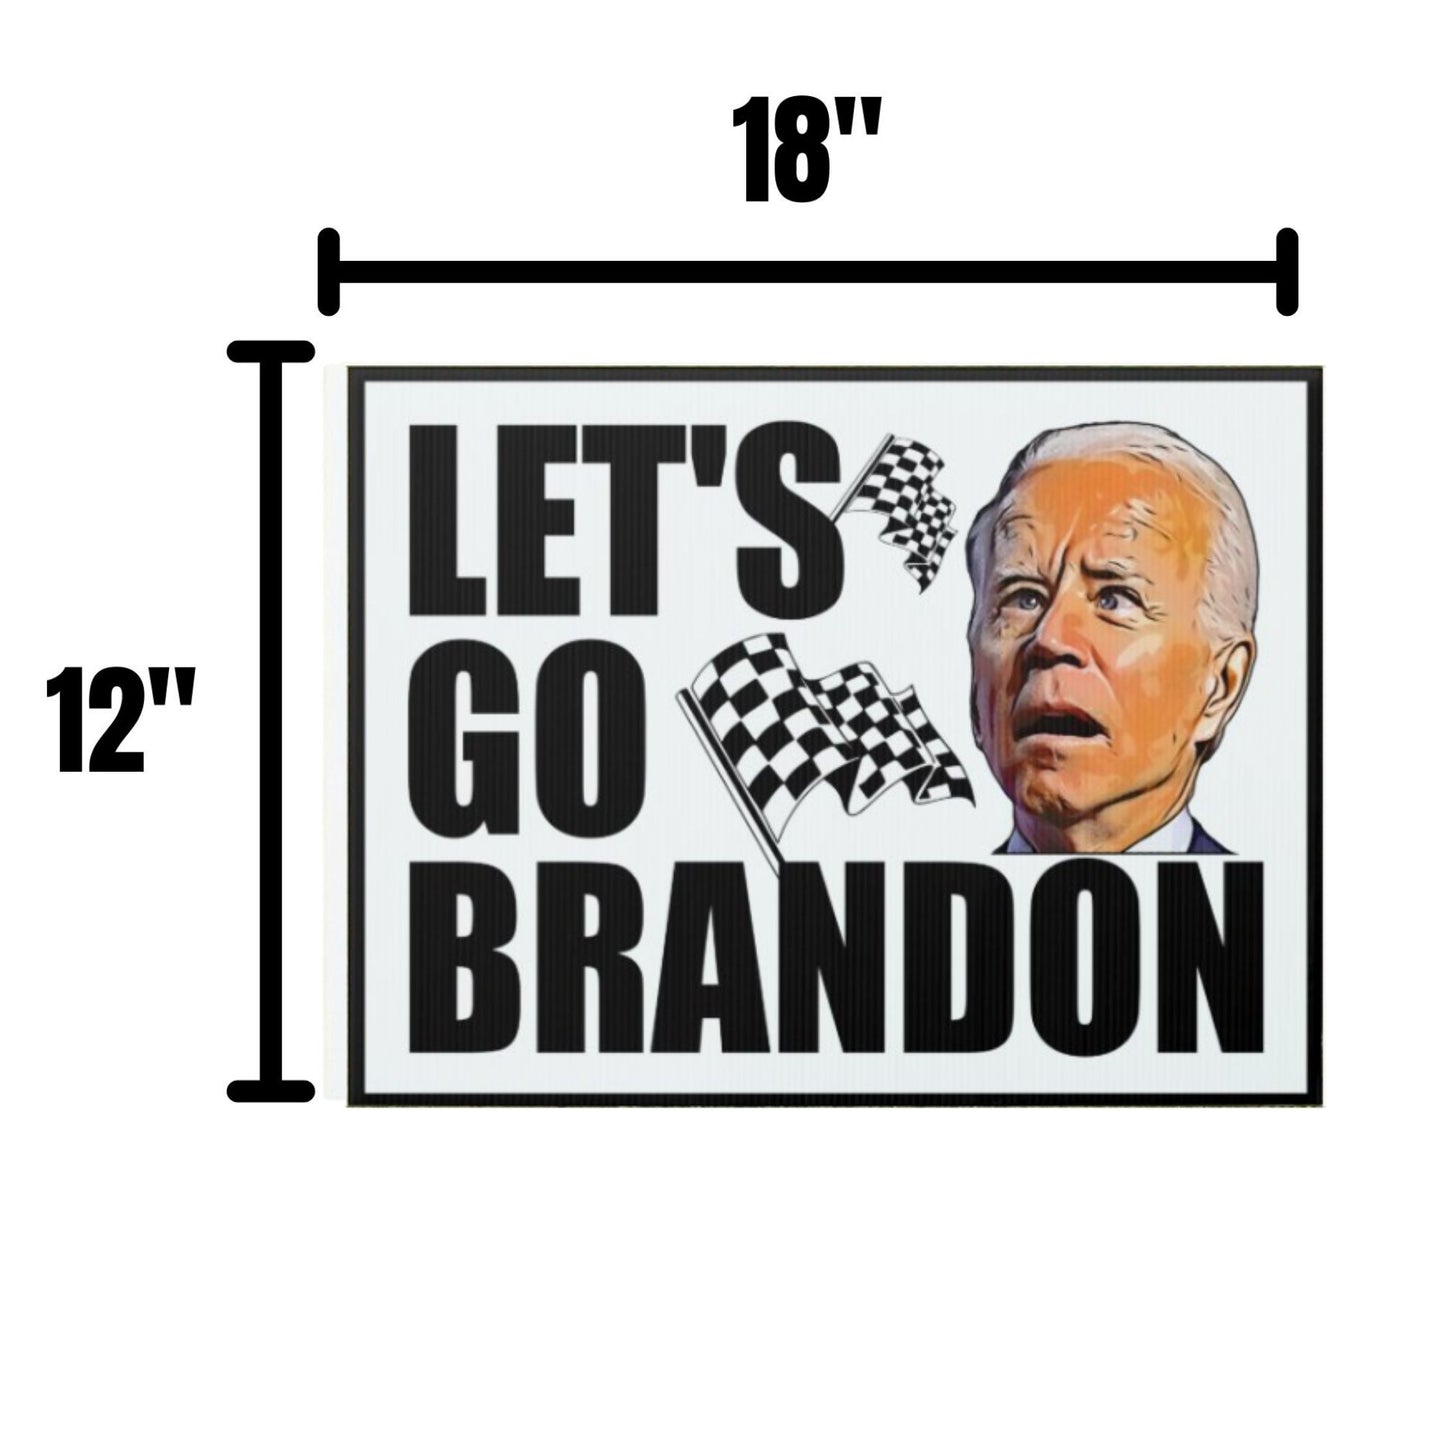 Let's Go Brandon Yard Sign